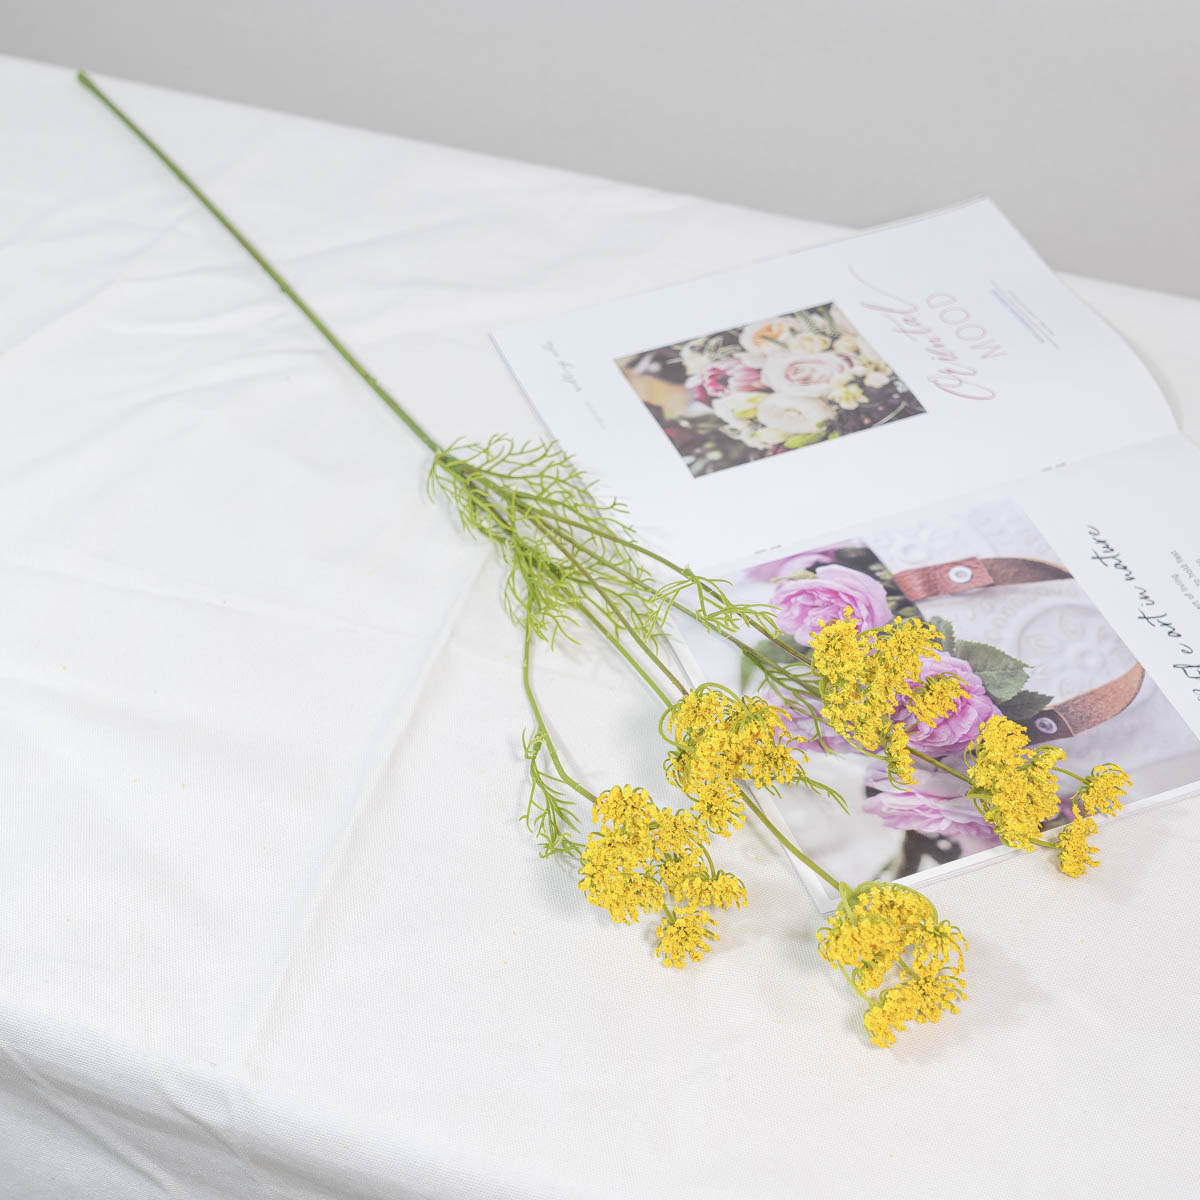 실크플라워 실크플라워 조화꽃 레이스플라워 가지 80cm 옐로우 테이블에 놓은 사진